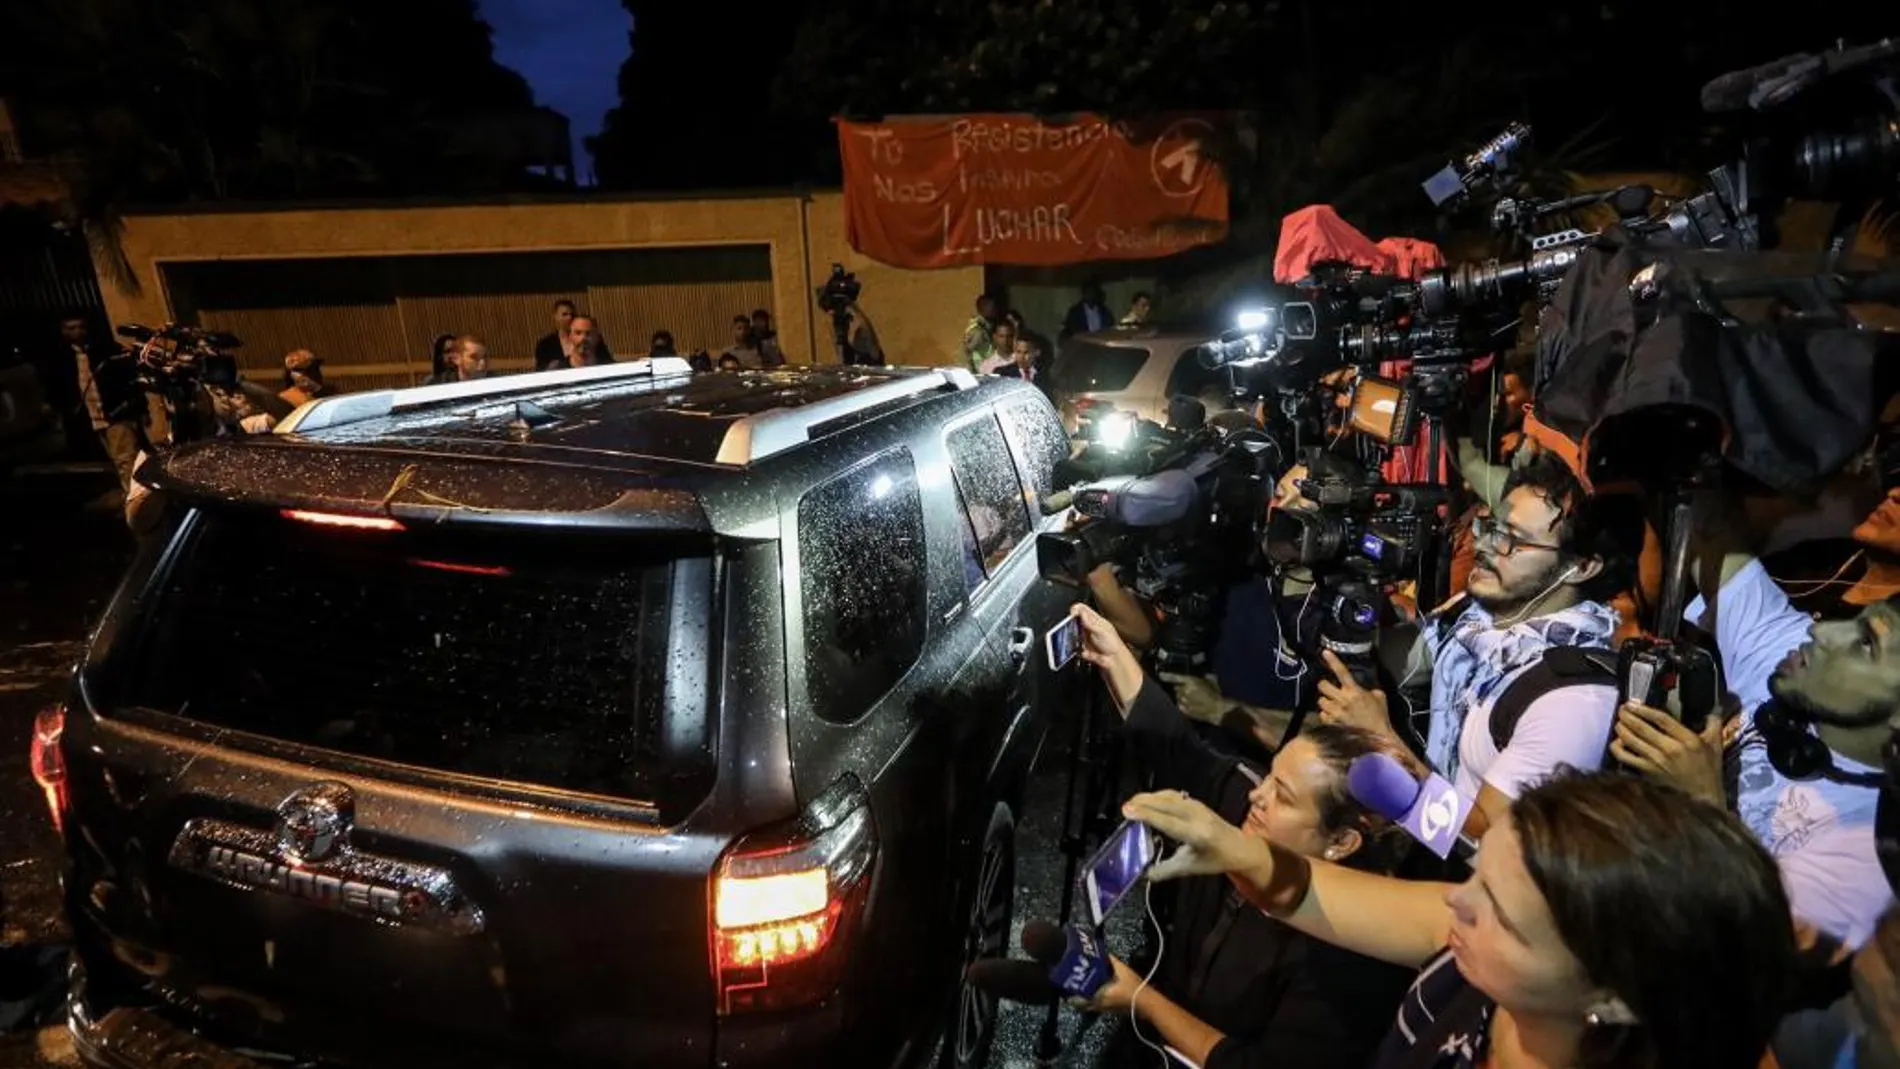 El exjefe del gobierno español José Luis Rodríguez Zapatero se retira dentro de un vehículo de la casa de Leopoldo López